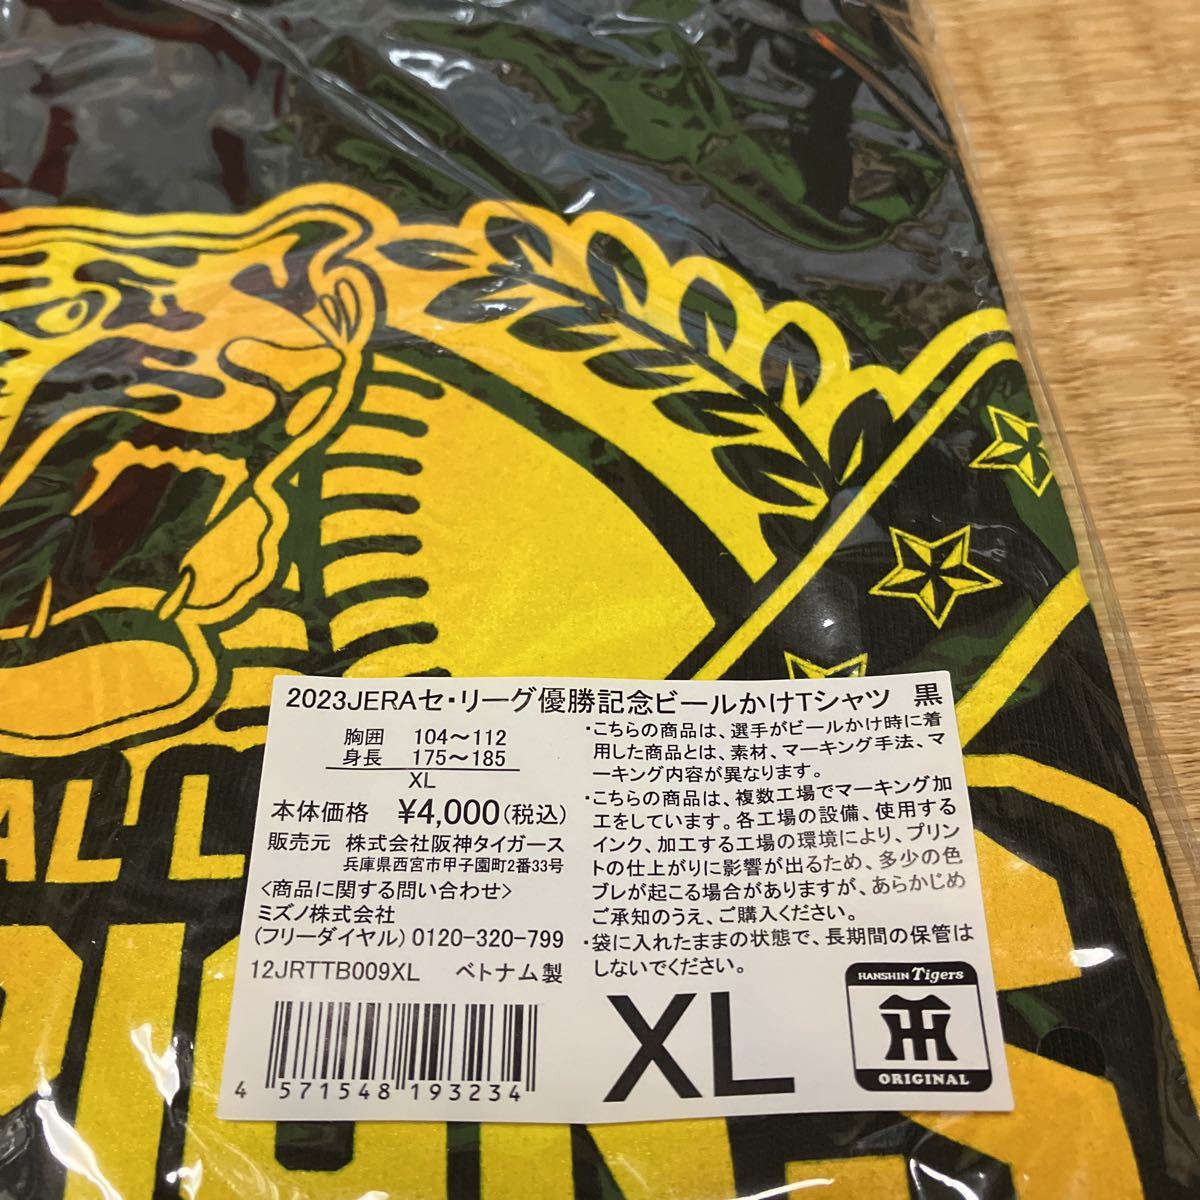 阪神タイガース2023優勝ビールかけTシャツXLサイズ ブラック未使用未開封です。(必ず説明文をご覧下さい。)_画像4